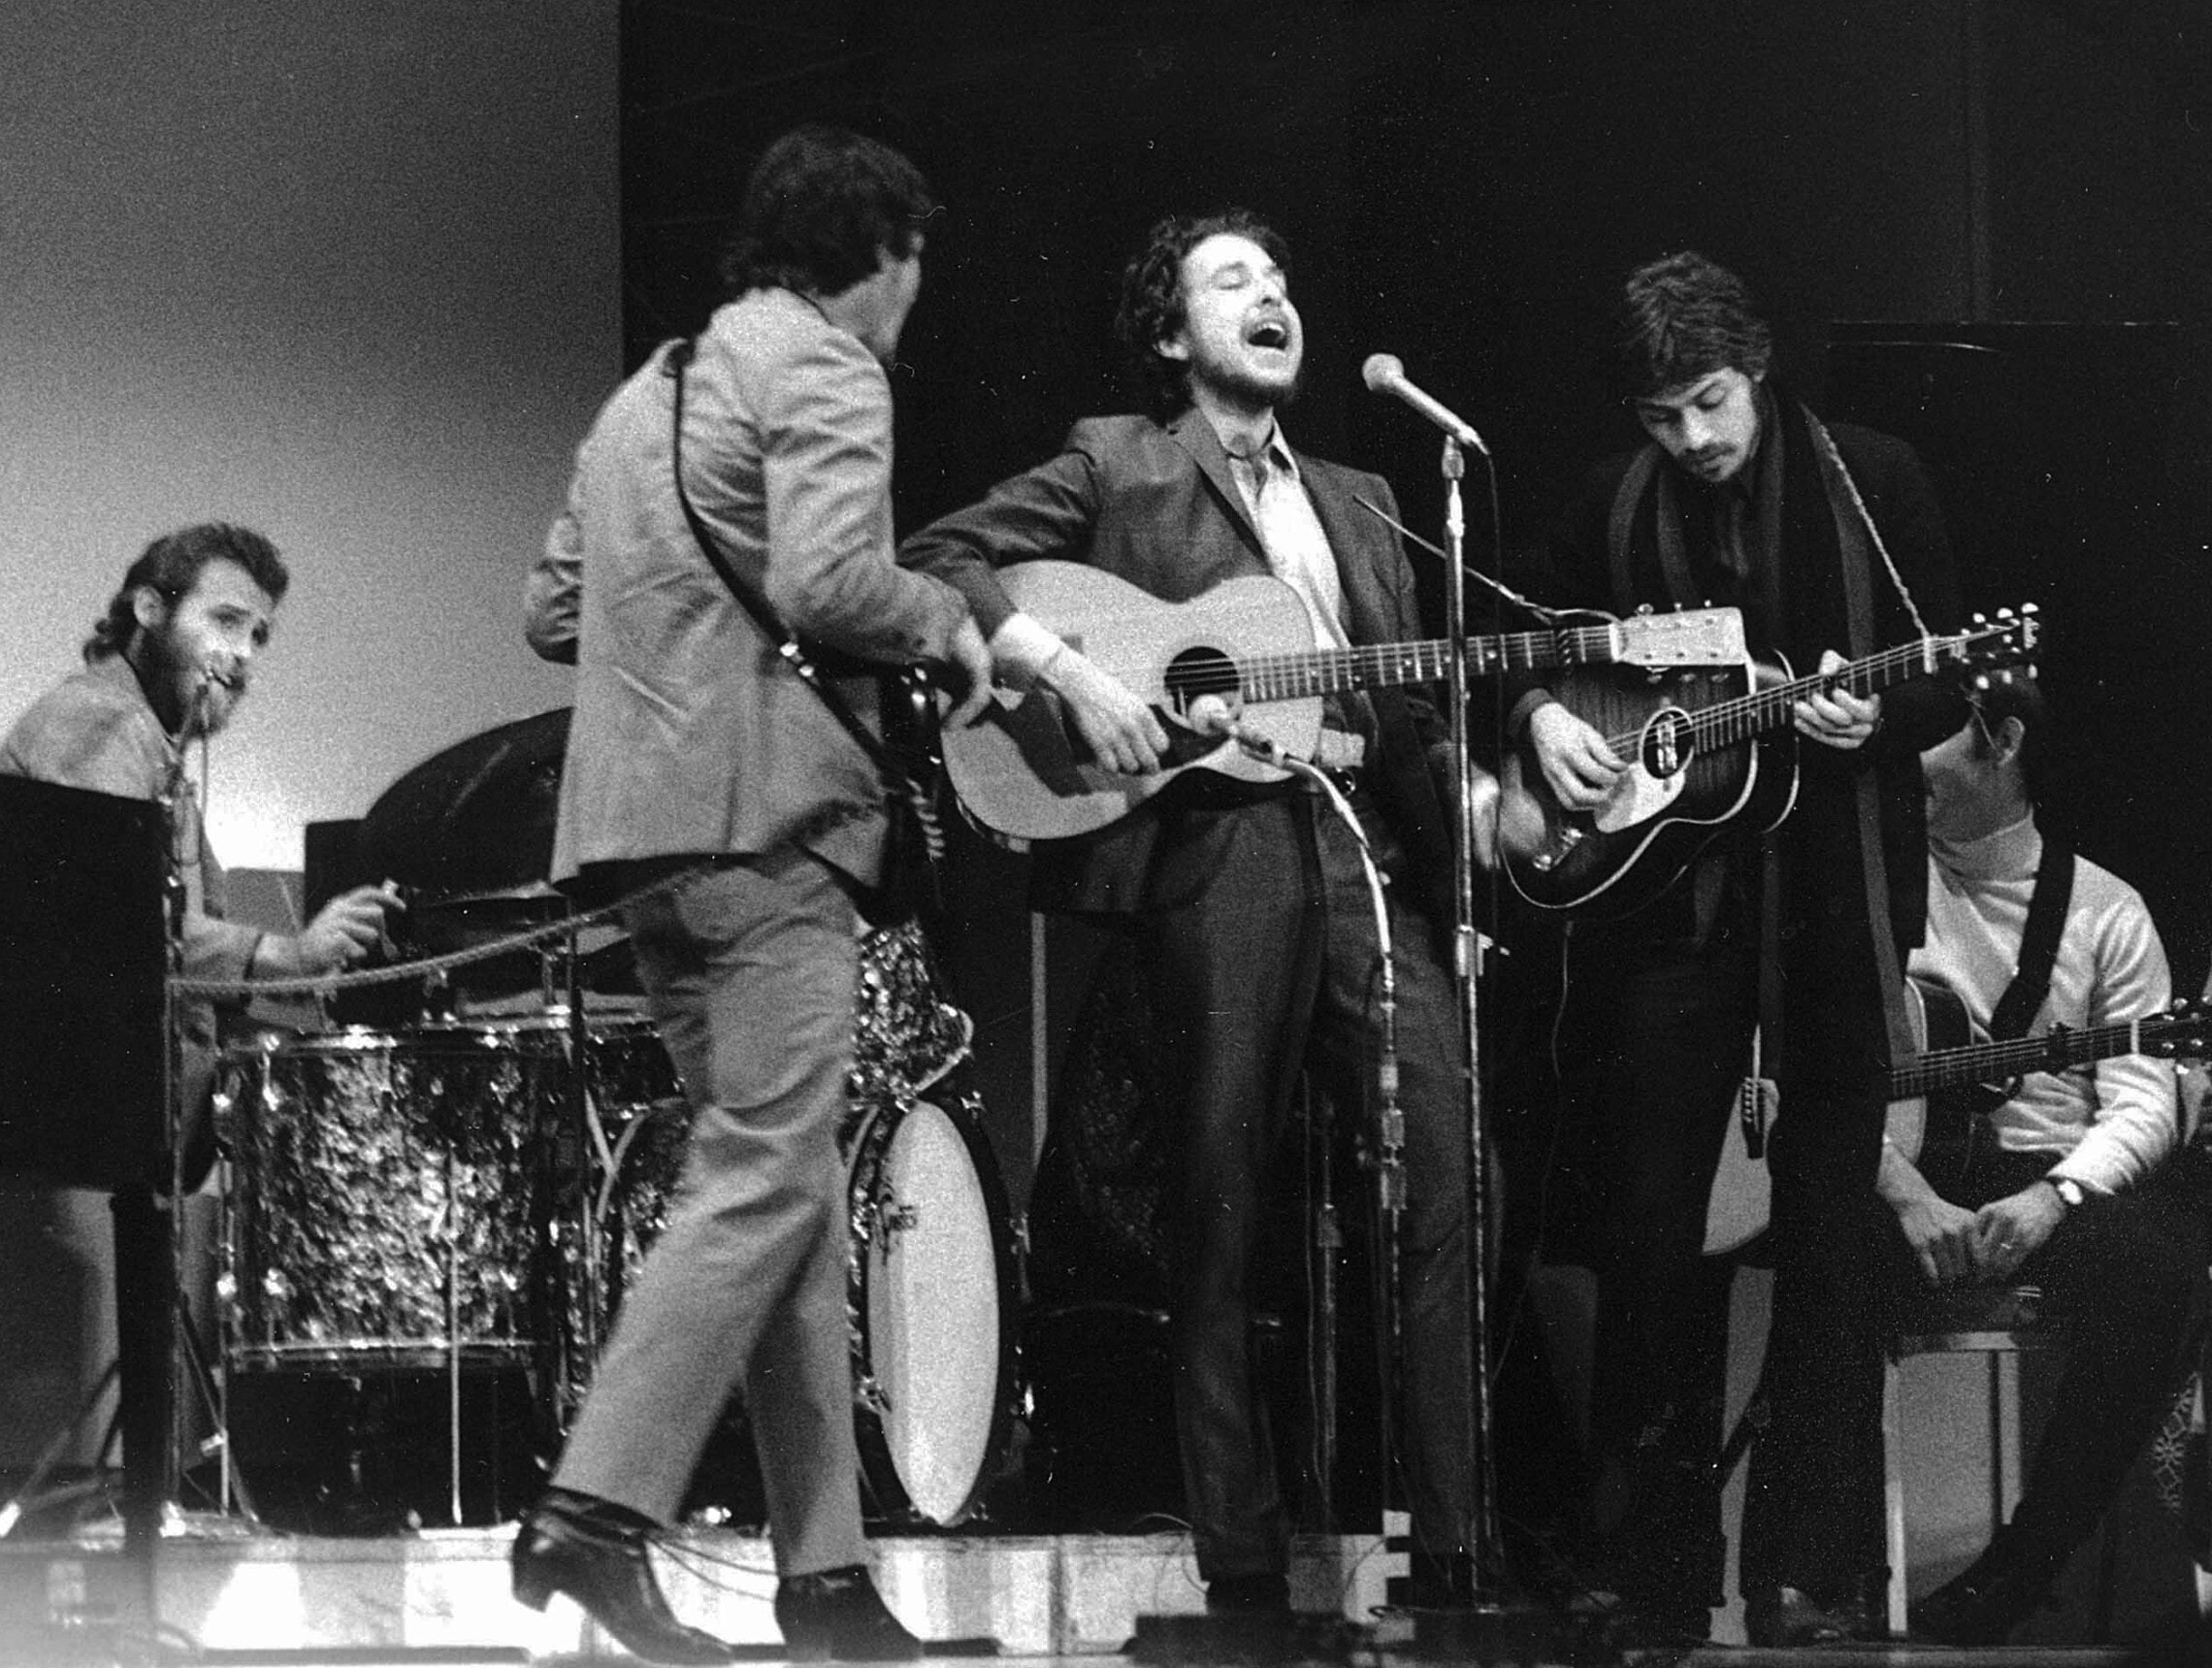 בוב דילן (במרכז) כשלצידו רובי רוברטסון (מימין), ריק דנקו (שני משמאל) ולבון הלם על התופים בהופעה בקרנגי הול, ינואר 1968 (צילום: AP Photo)